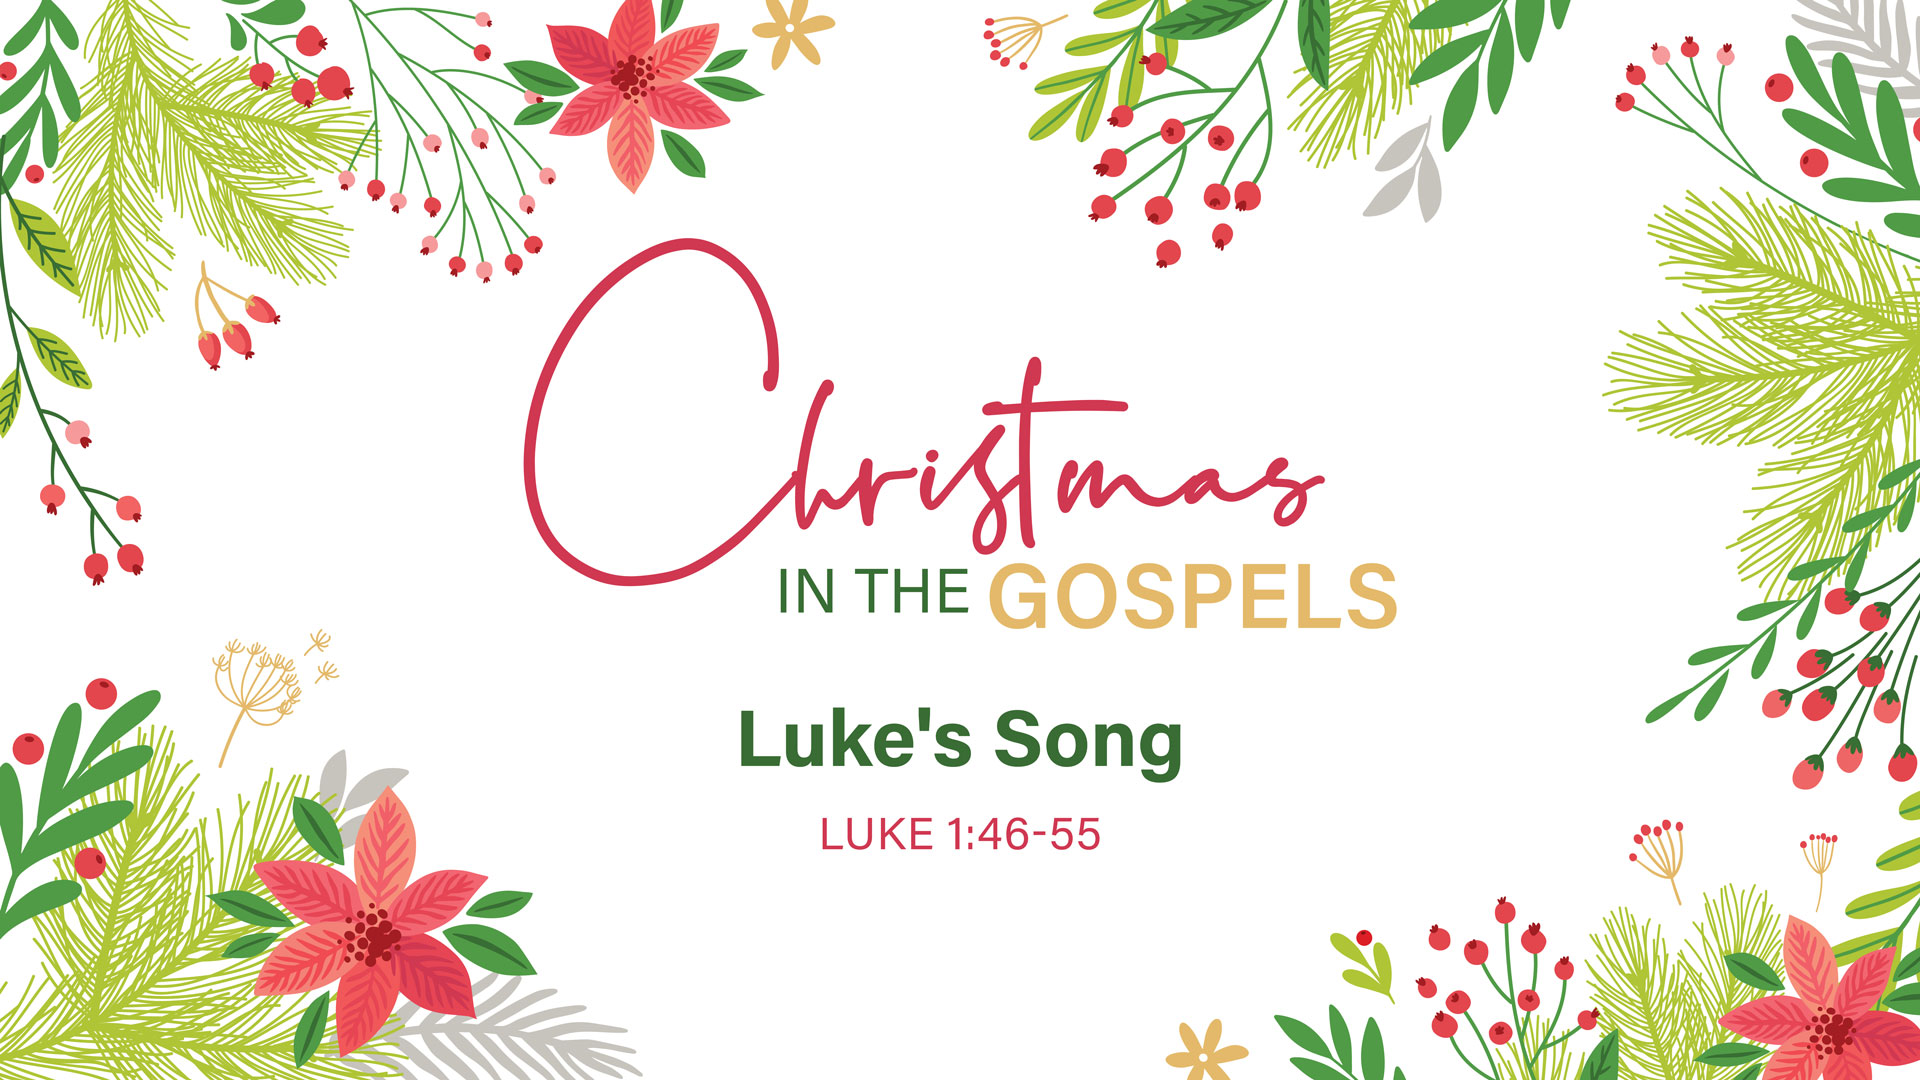 Christmas in the Gospels: Luke's Song